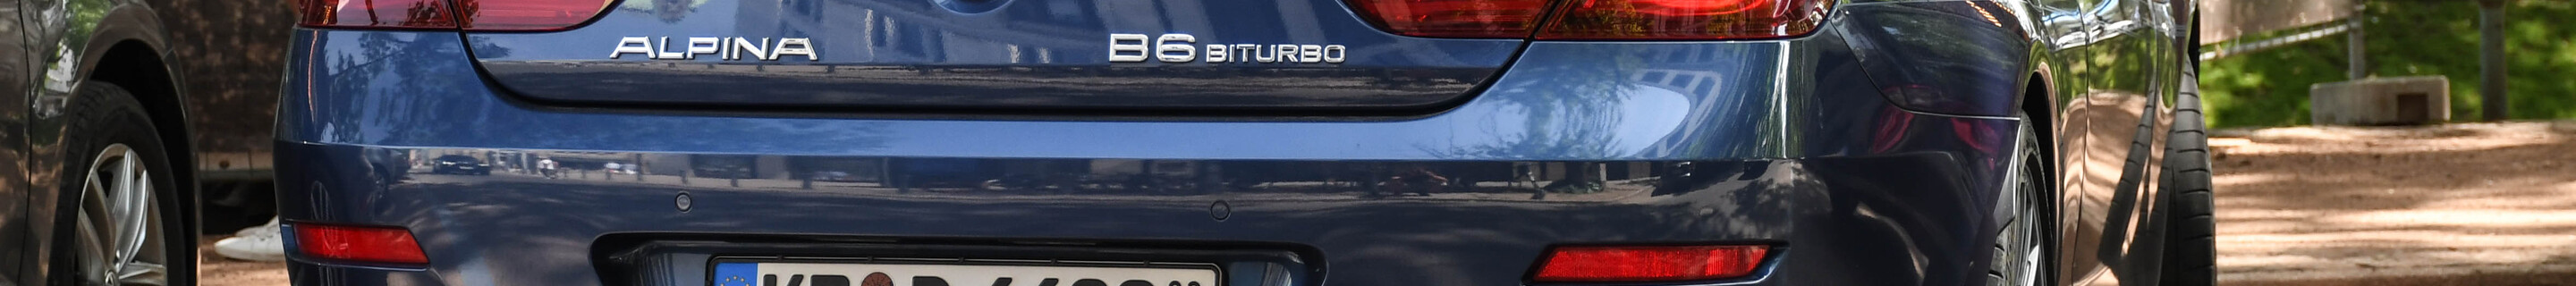 Alpina B6 BiTurbo Cabriolet 2015 Edition 50